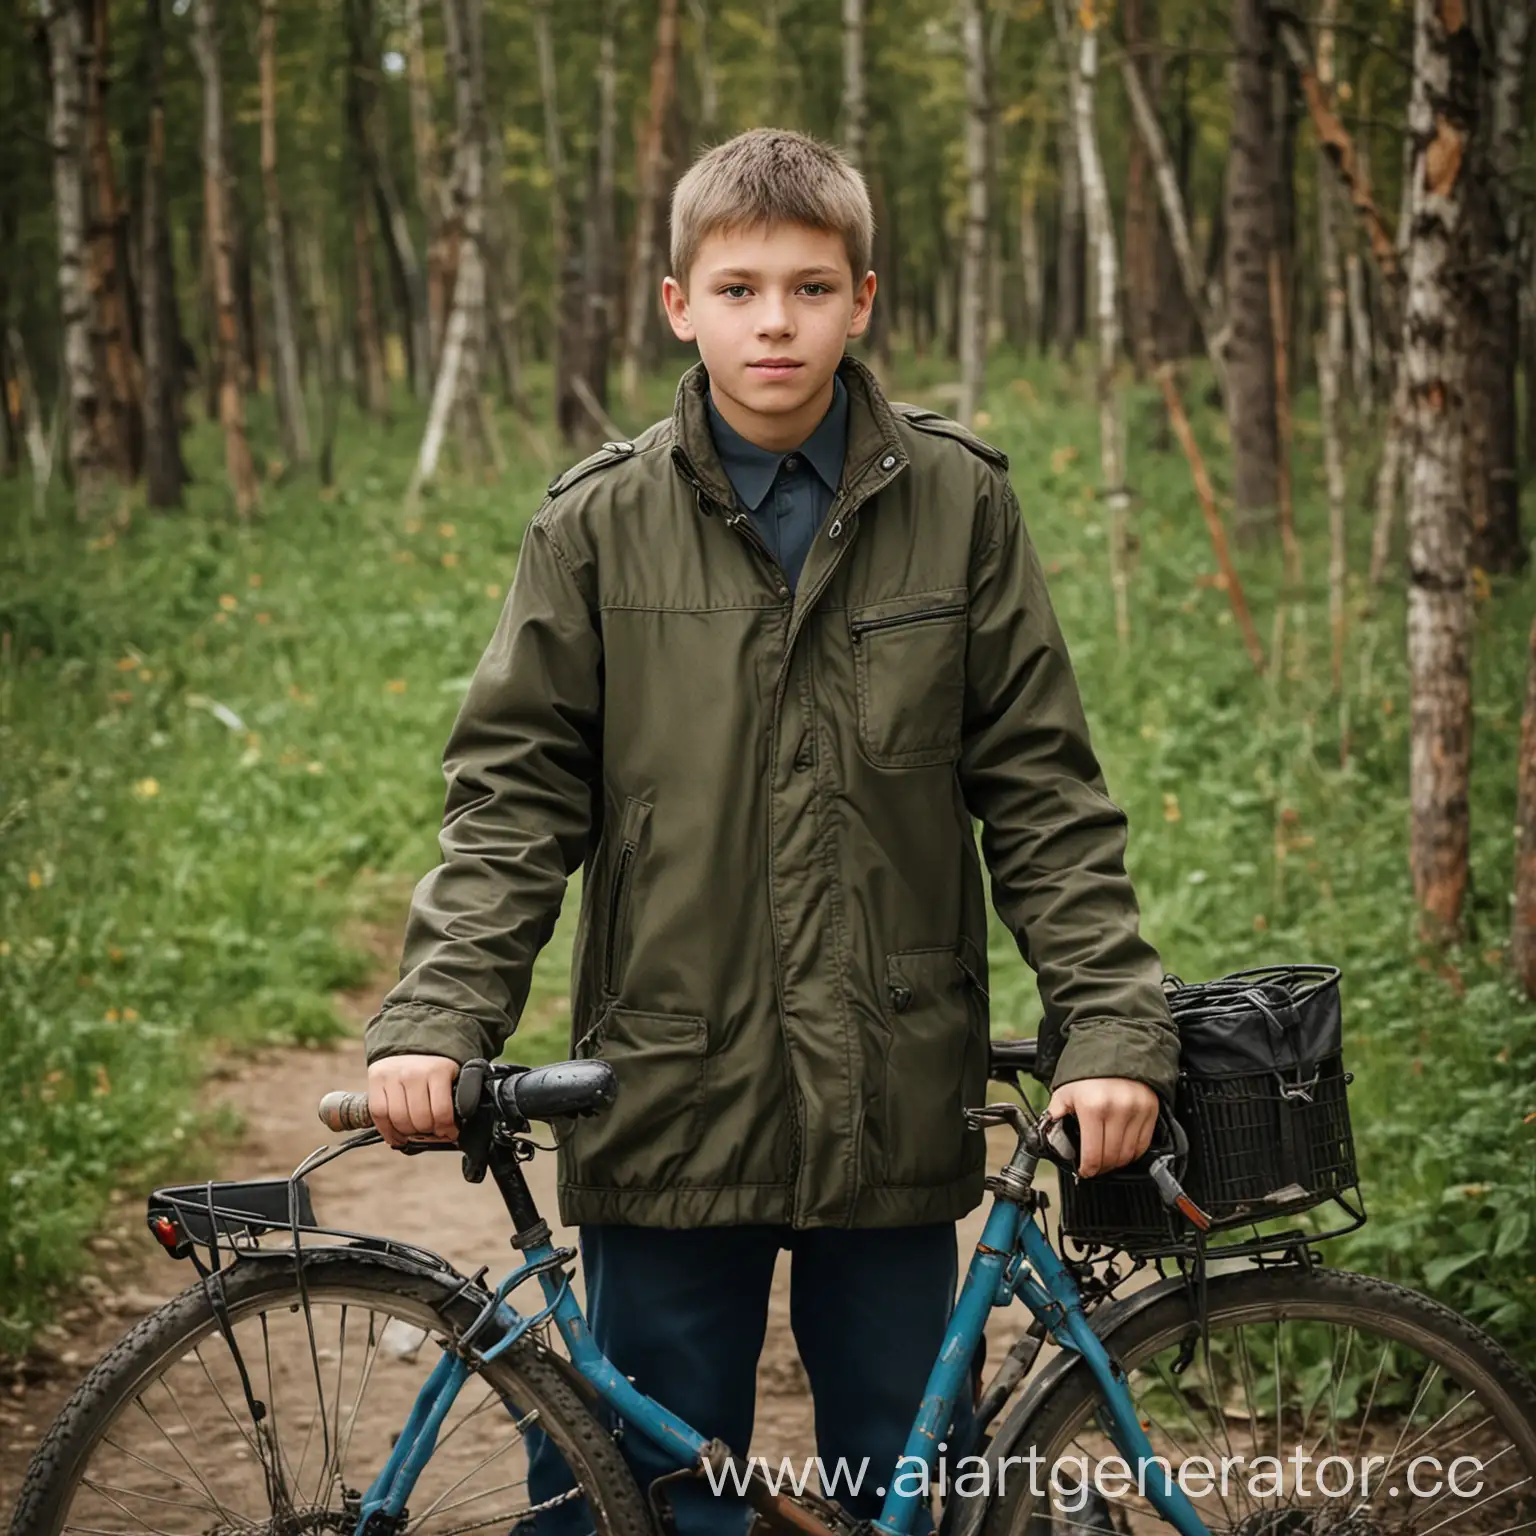 Young-Russian-Boy-Cycling-in-Urban-Setting